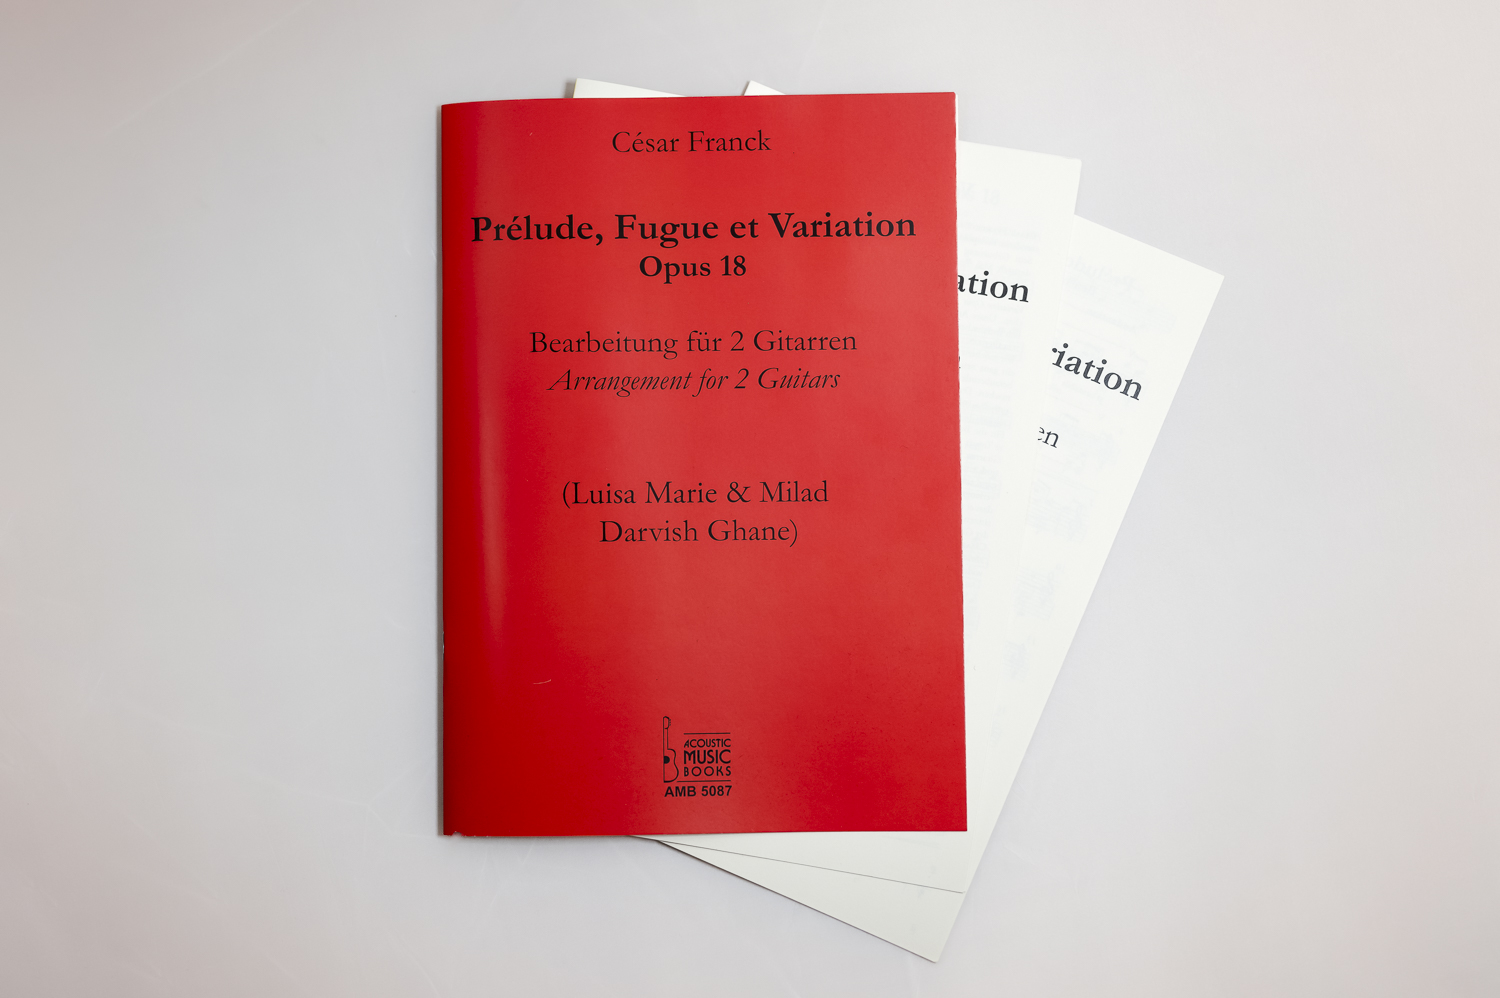 Milad and Luisa Marie Darvish Ghane's Arrangement of Prélude, Fugue et Variation by César Franck